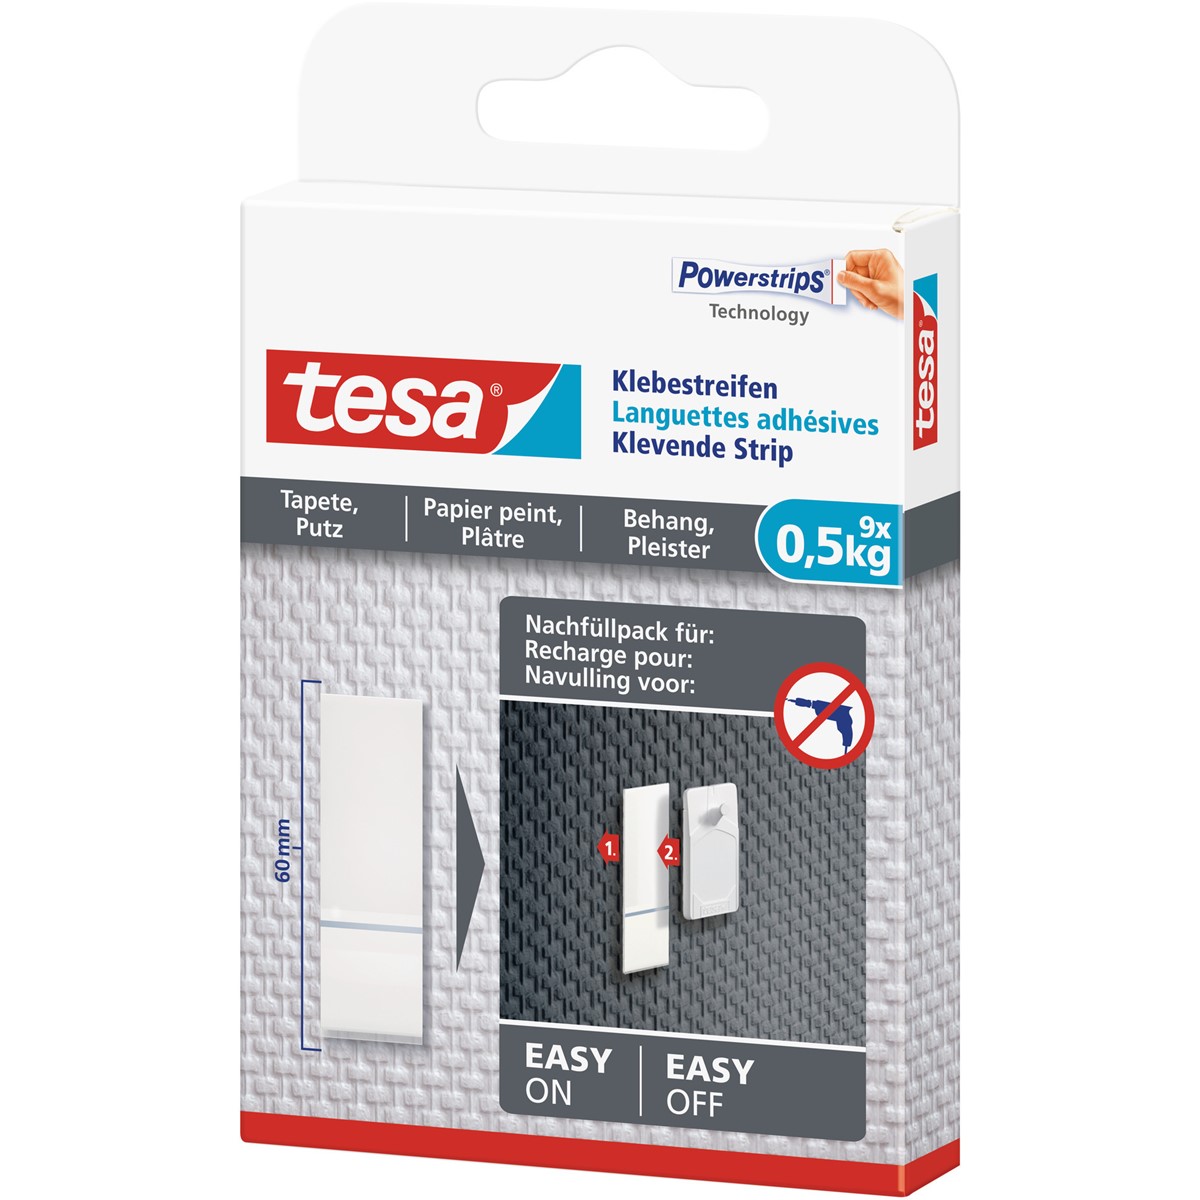 tesa 77770-00000 - Powerstrips - 9 Klebestreifen für Tapeten und Putz, max.  0,5kg